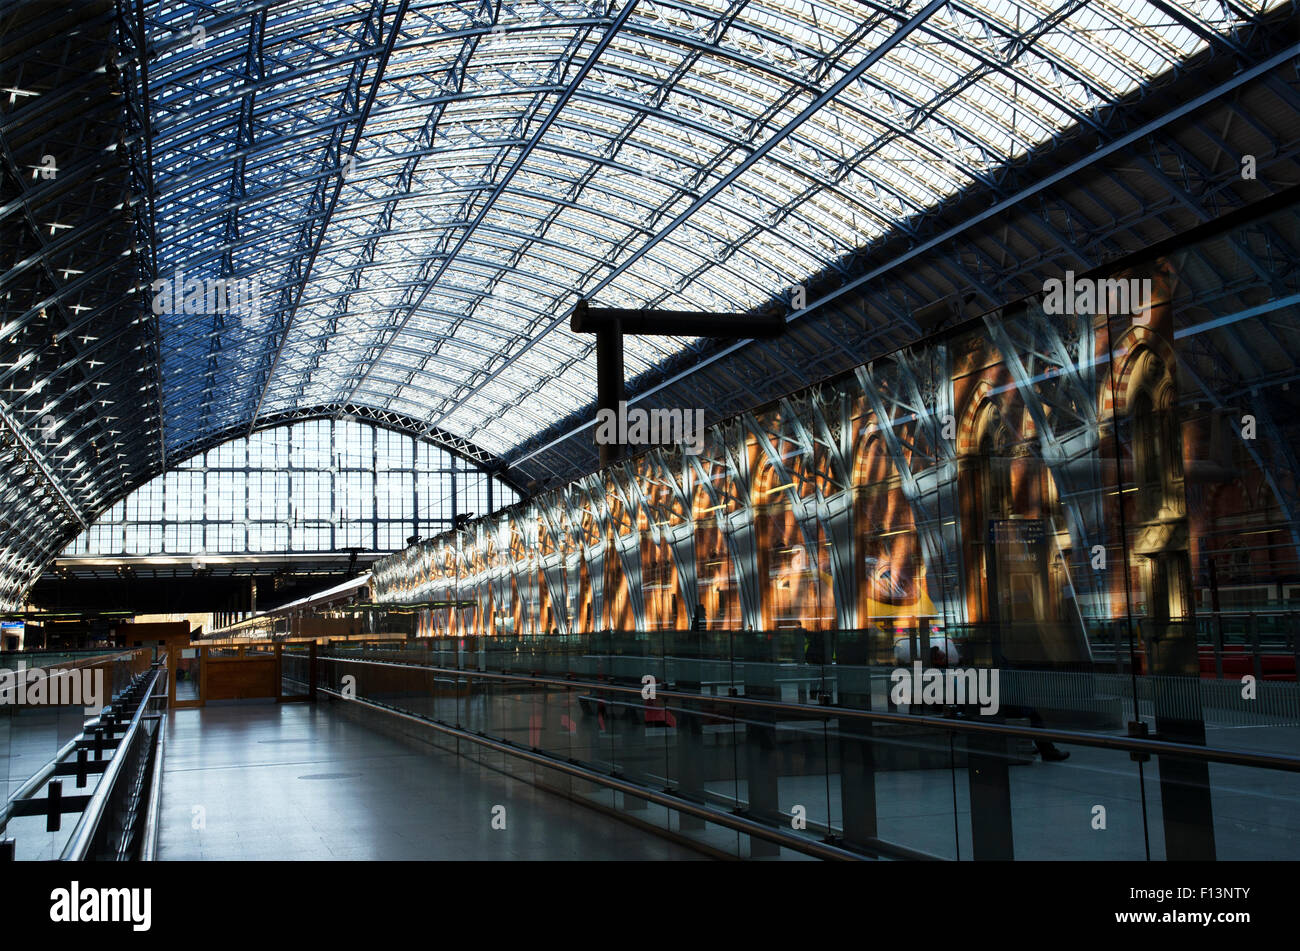 Stazione ferroviaria internazionale di St Pancras Station tetto trainshed William Henry barlow Londra Foto Stock